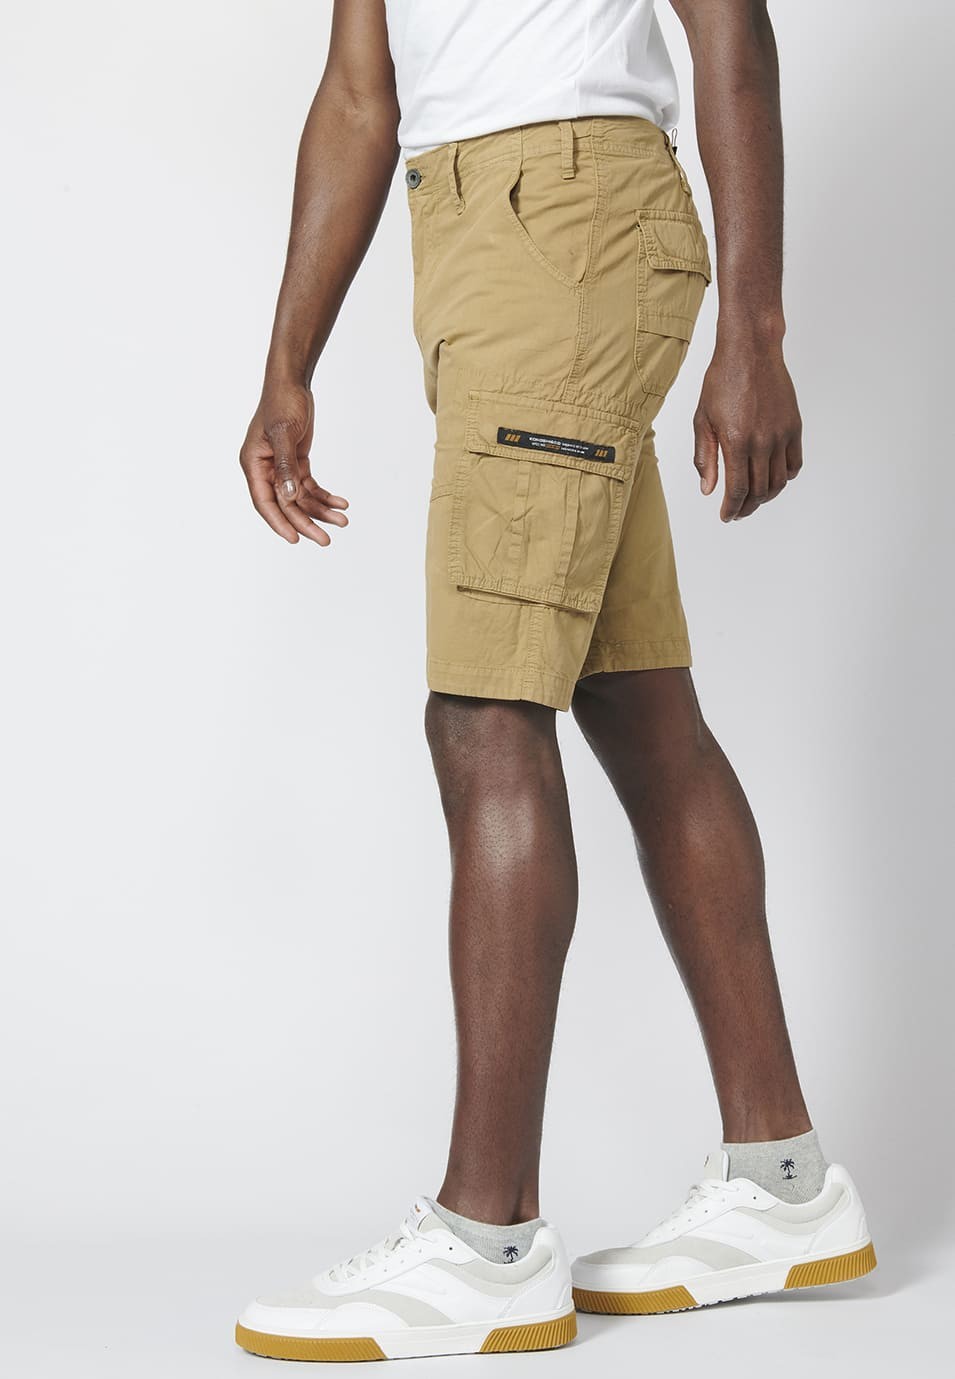 Bermuda pantalón corto estilo cargo para hombre con seis bolsillos 2